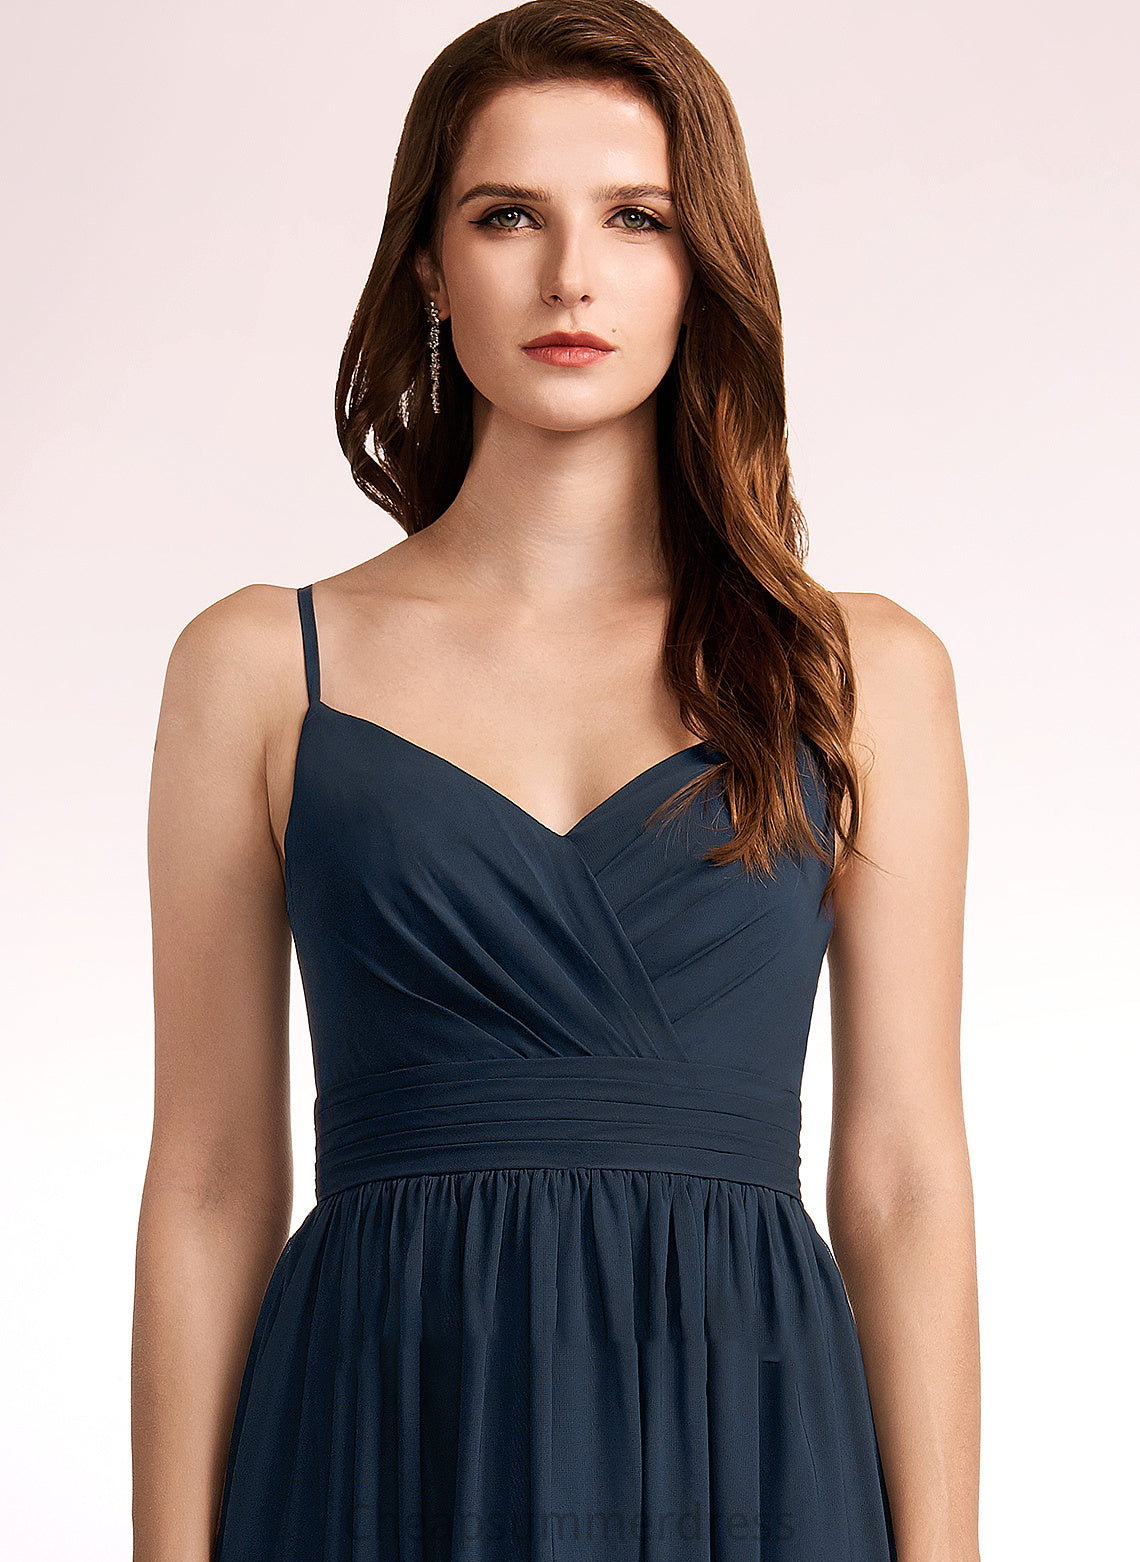 Silhouette Length Floor-Length Fabric A-Line Embellishment Lace Neckline V-neck Elena Natural Waist Spandex